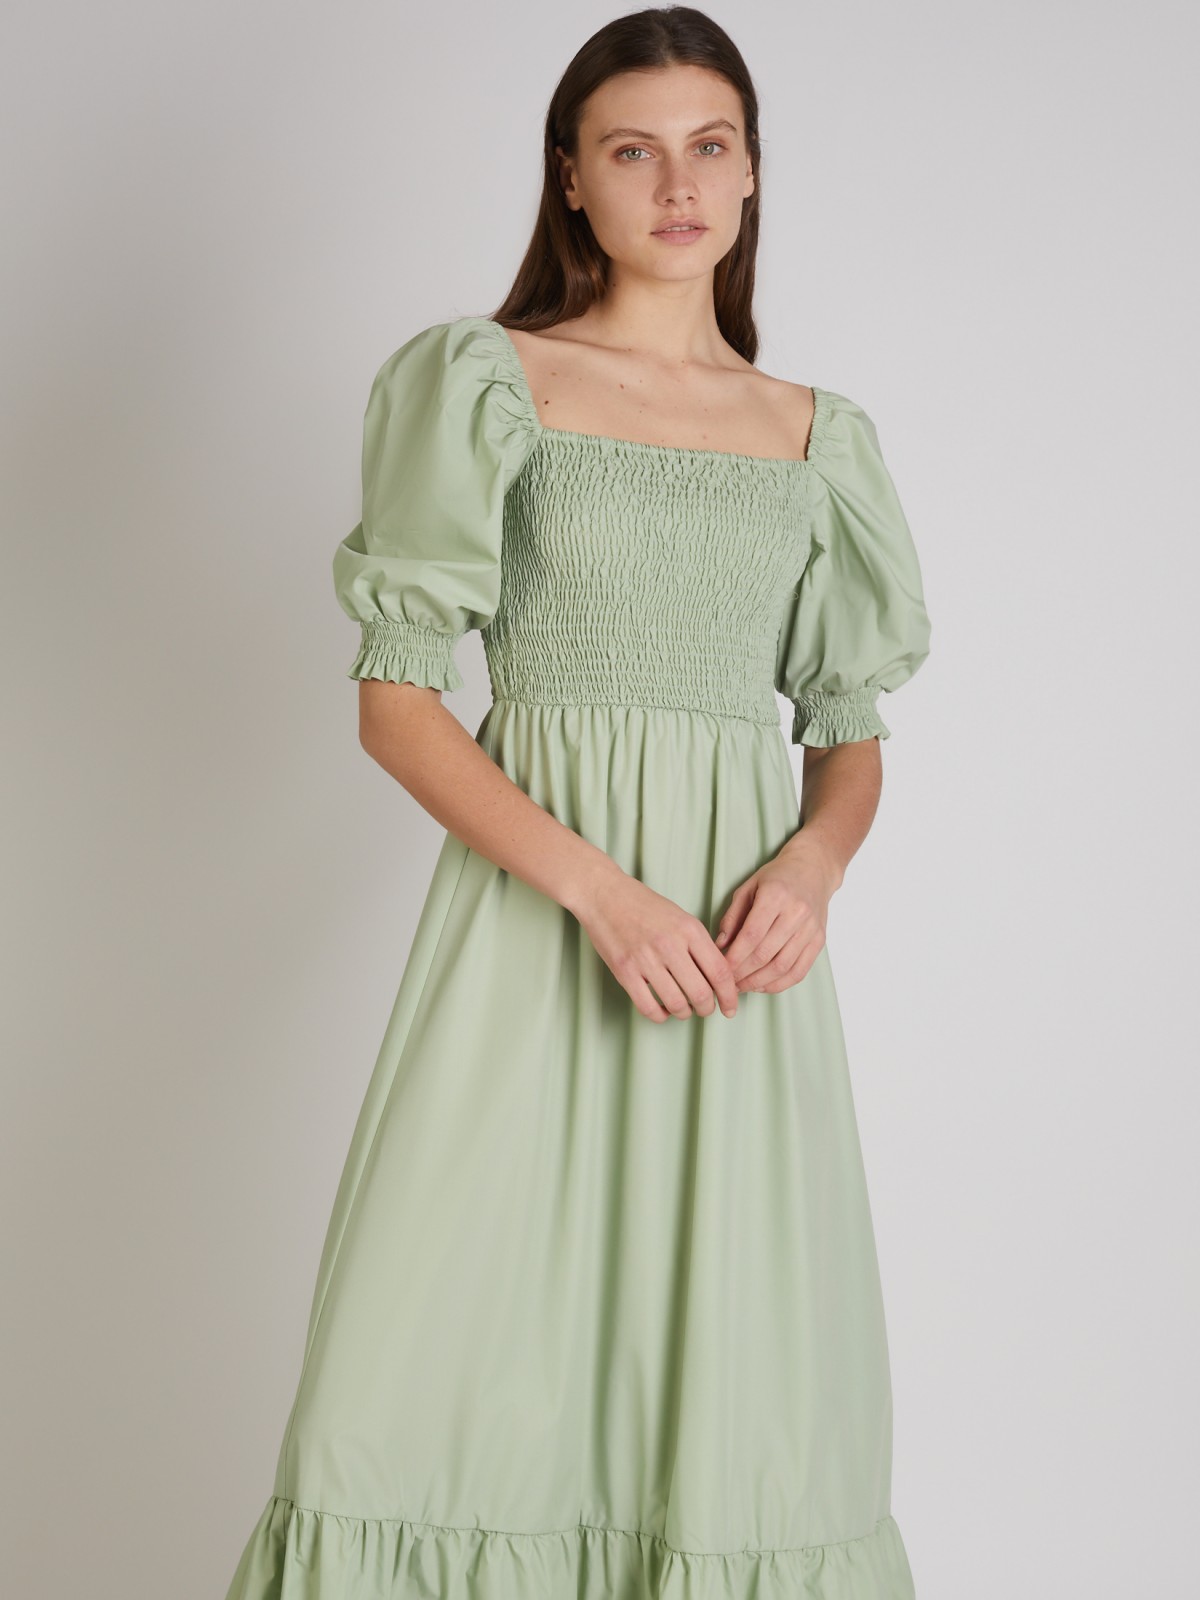 Платье zolla 022248262333, цвет светло-зеленый, размер XS - фото 2